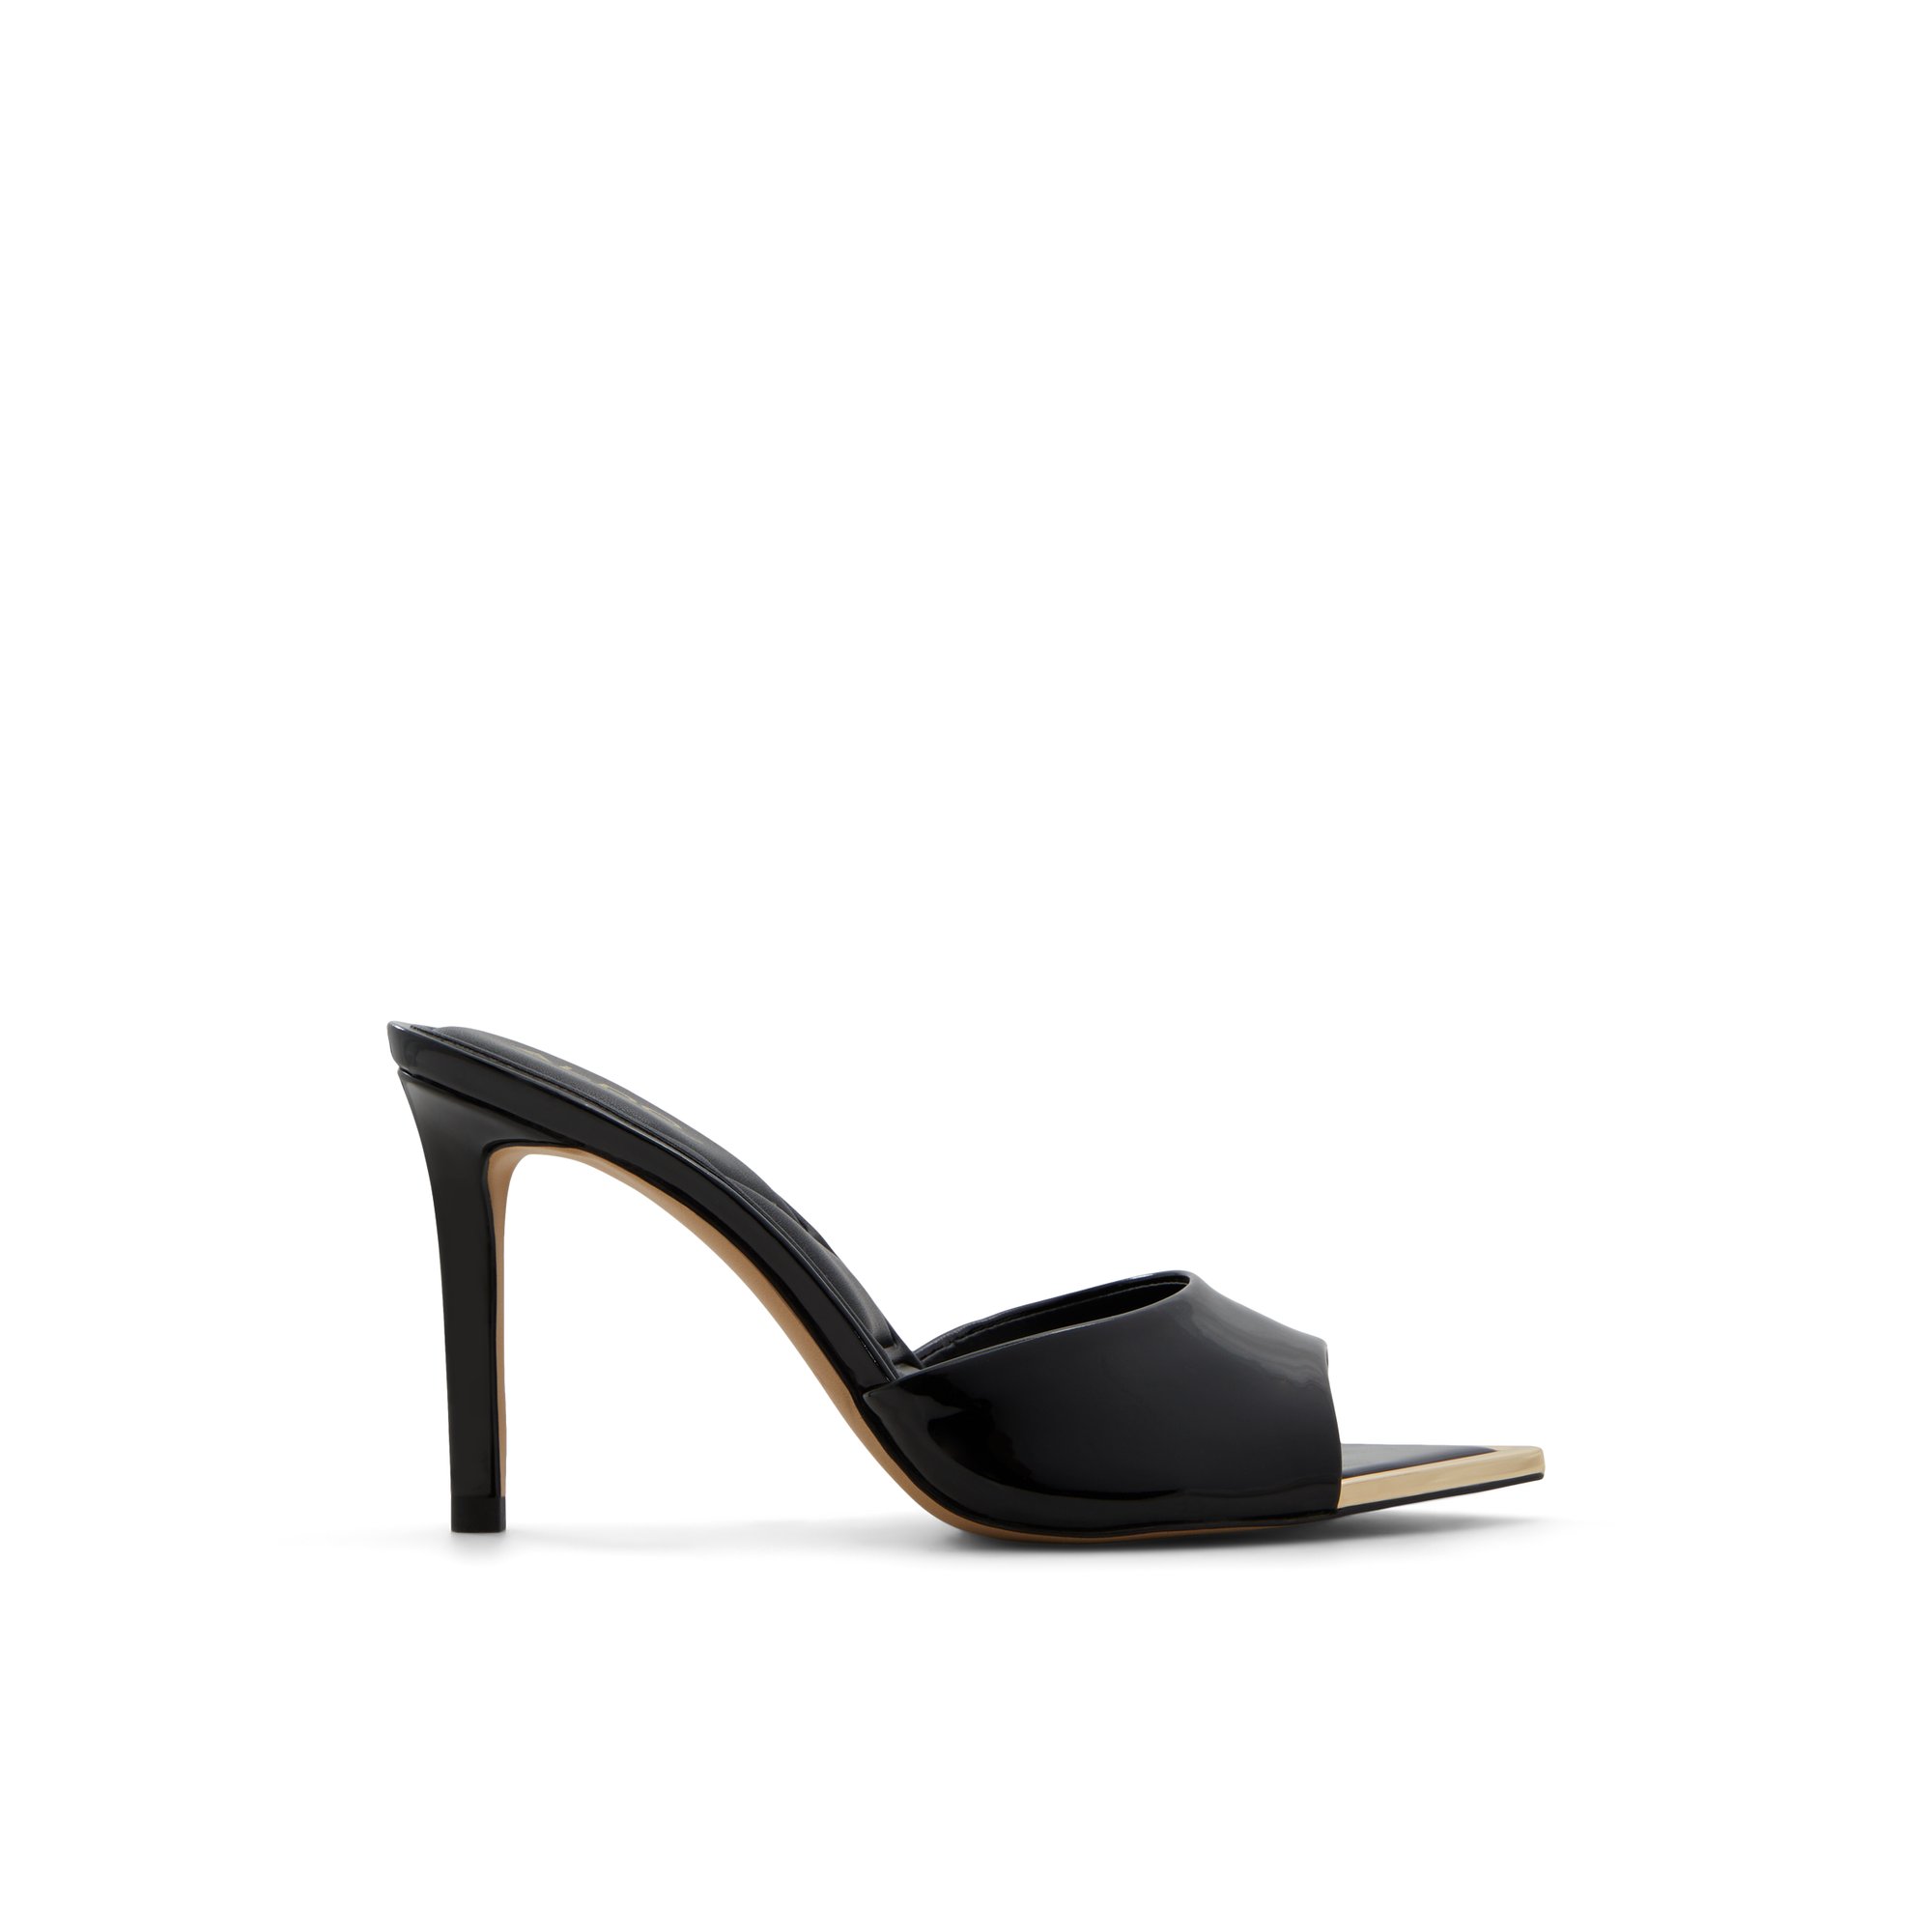 ALDO Anniebrilden - Women's Sandals Heeled Mules - Black